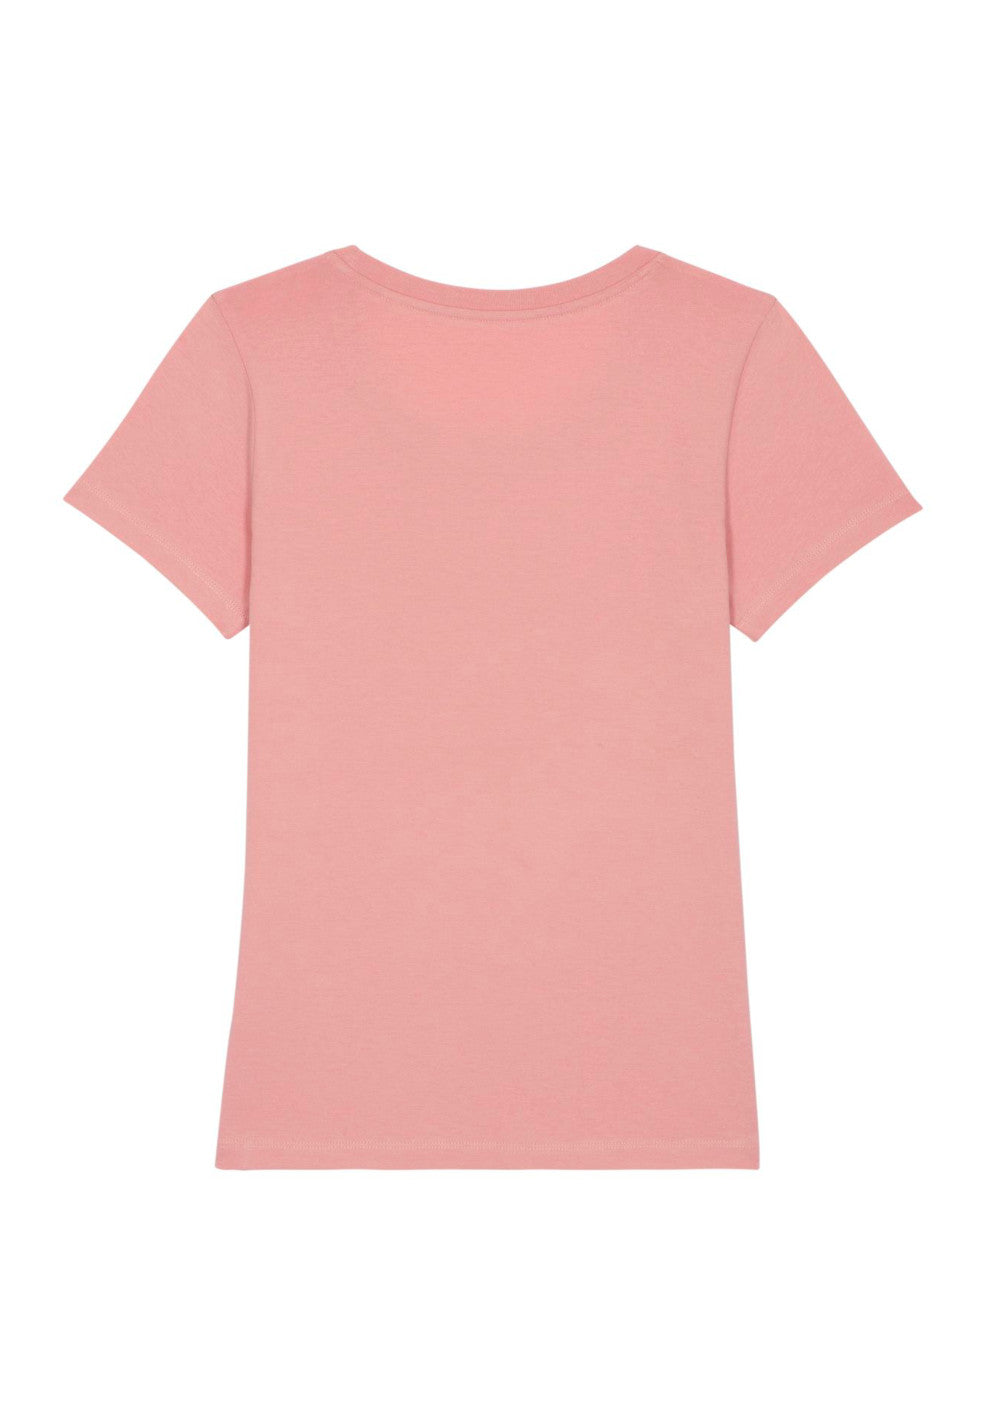 expresser canyon pink t-shirt